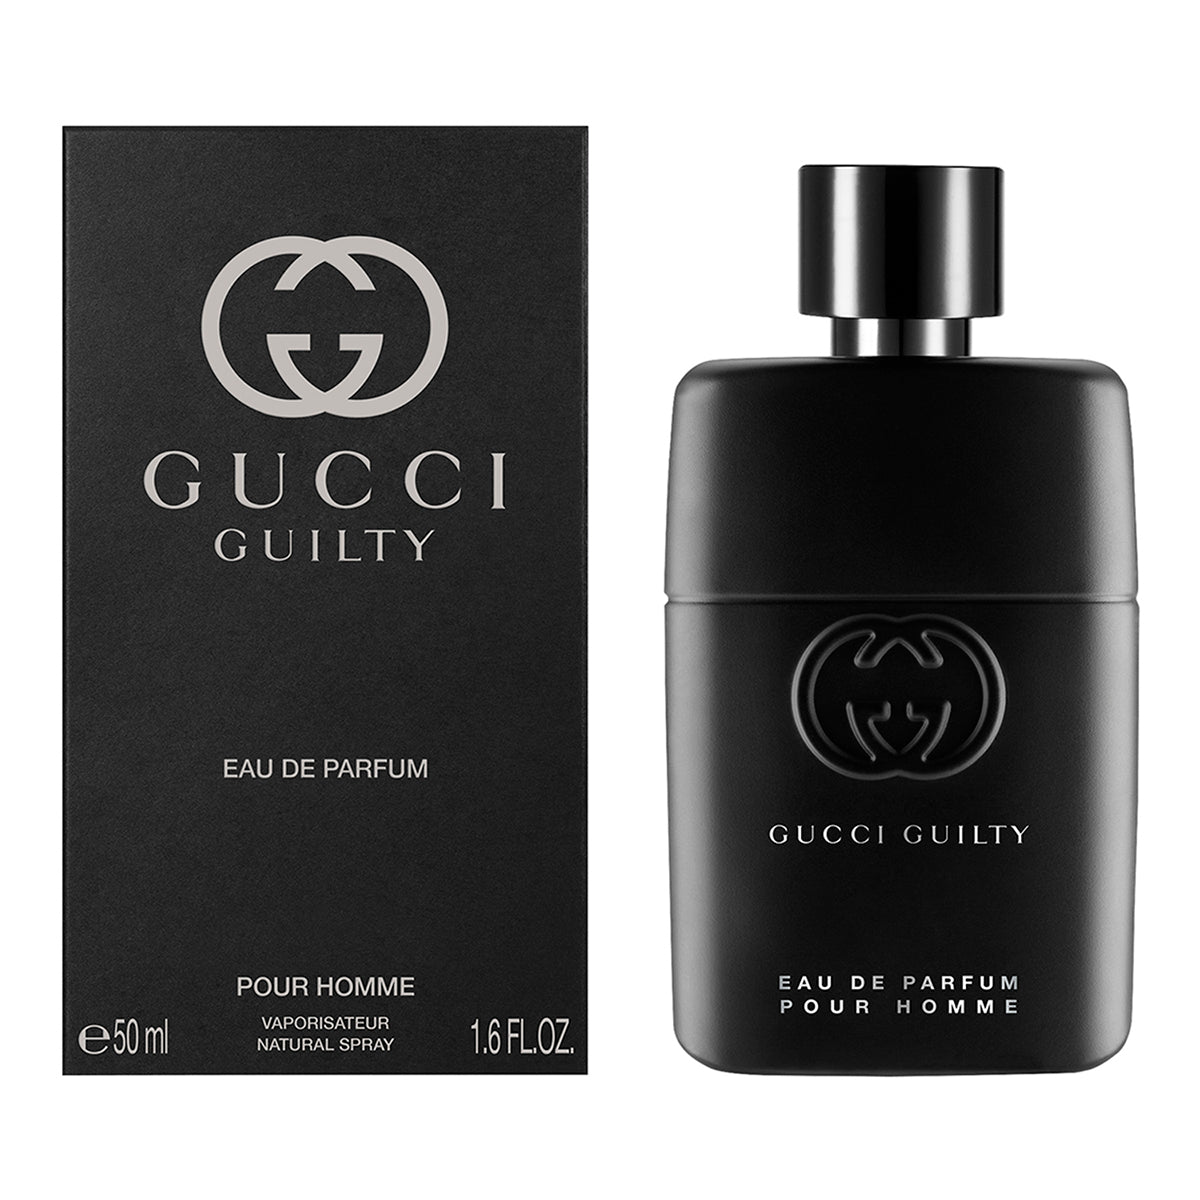 Gucci Guilty Eau de Parfum for Him